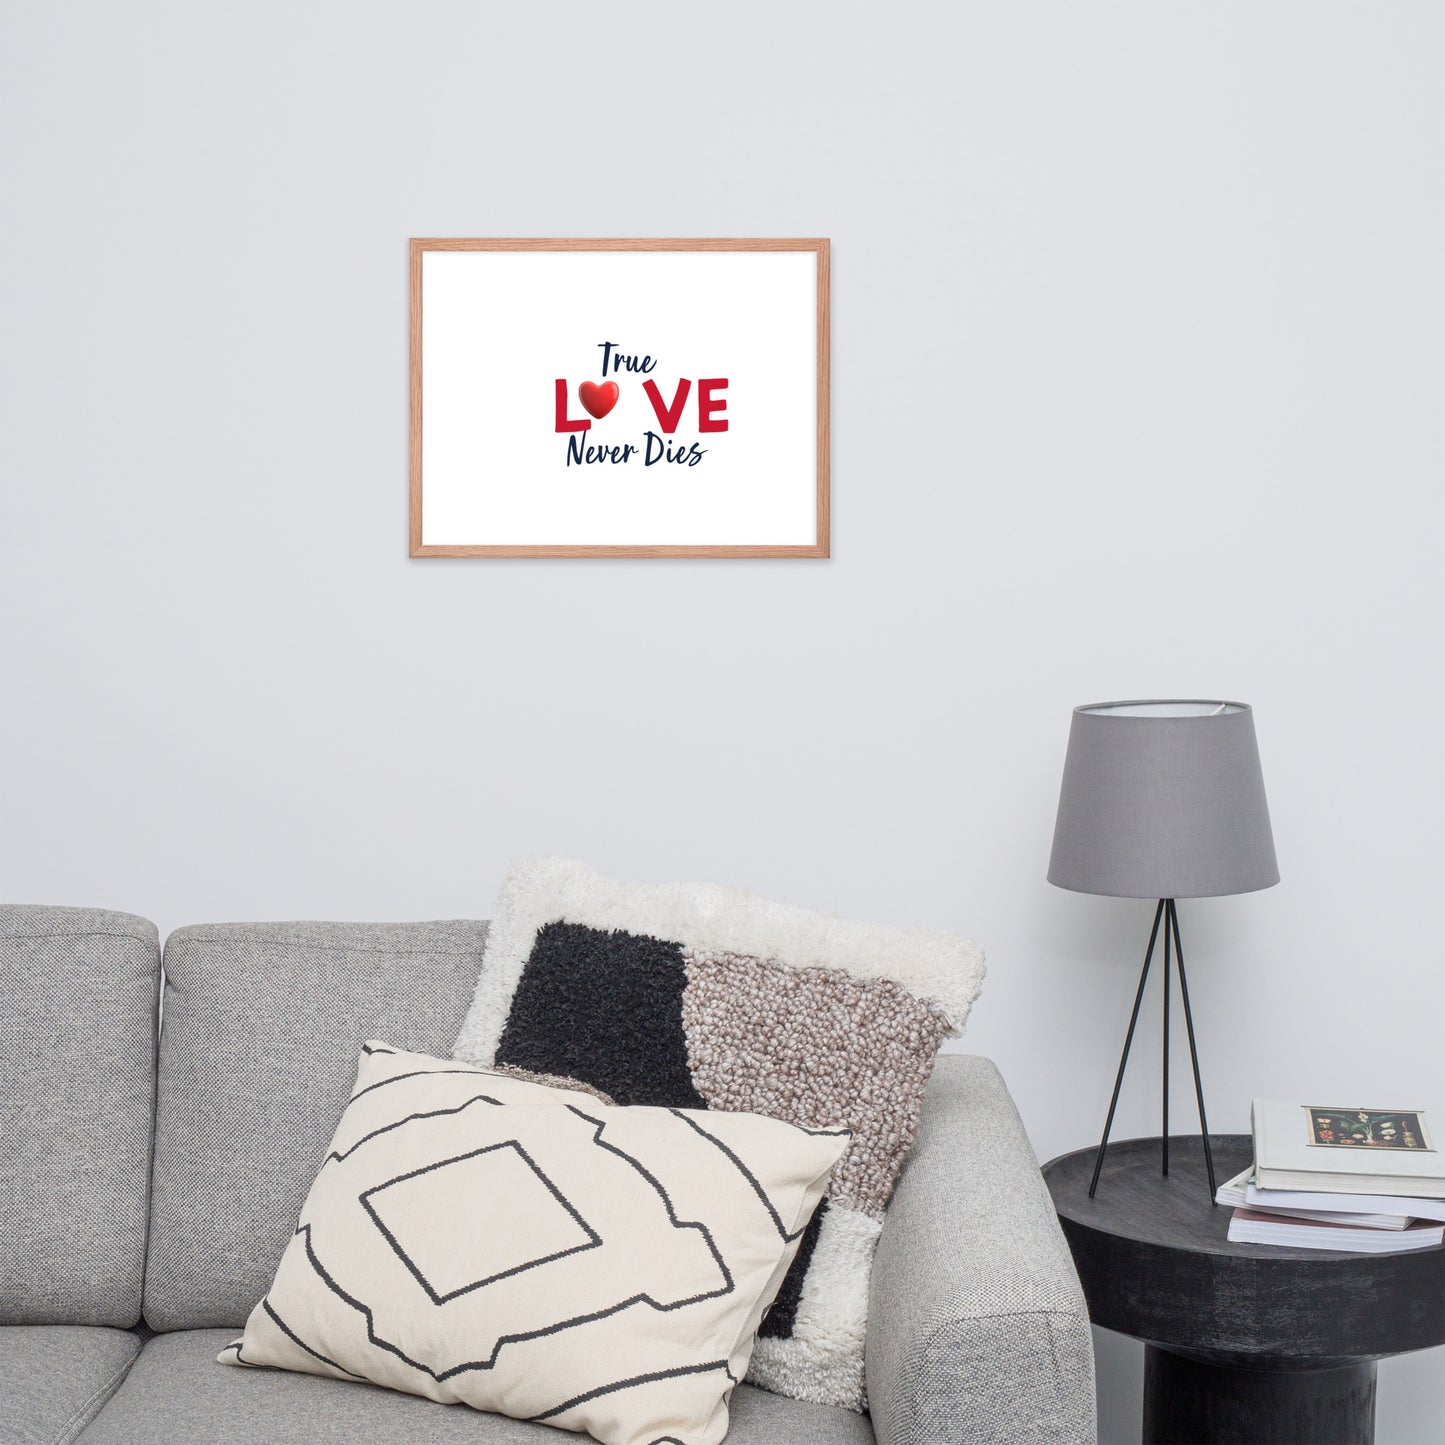 Framed Poster (True Love Never Dies - Love Framed Poster Horizontal Model 007)